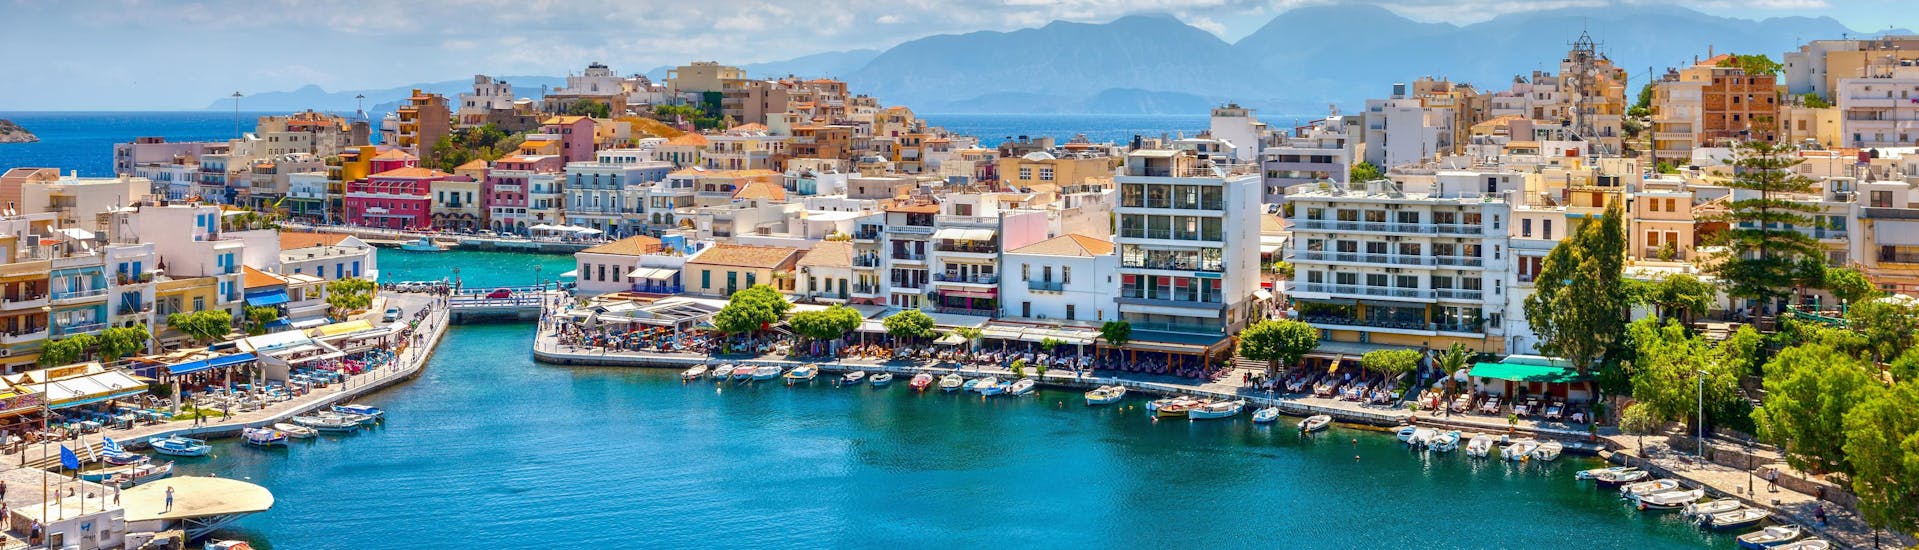 Immagine del porto di Agios Nikolaos, a Creta, una destinazione popolare per le gite in barca.